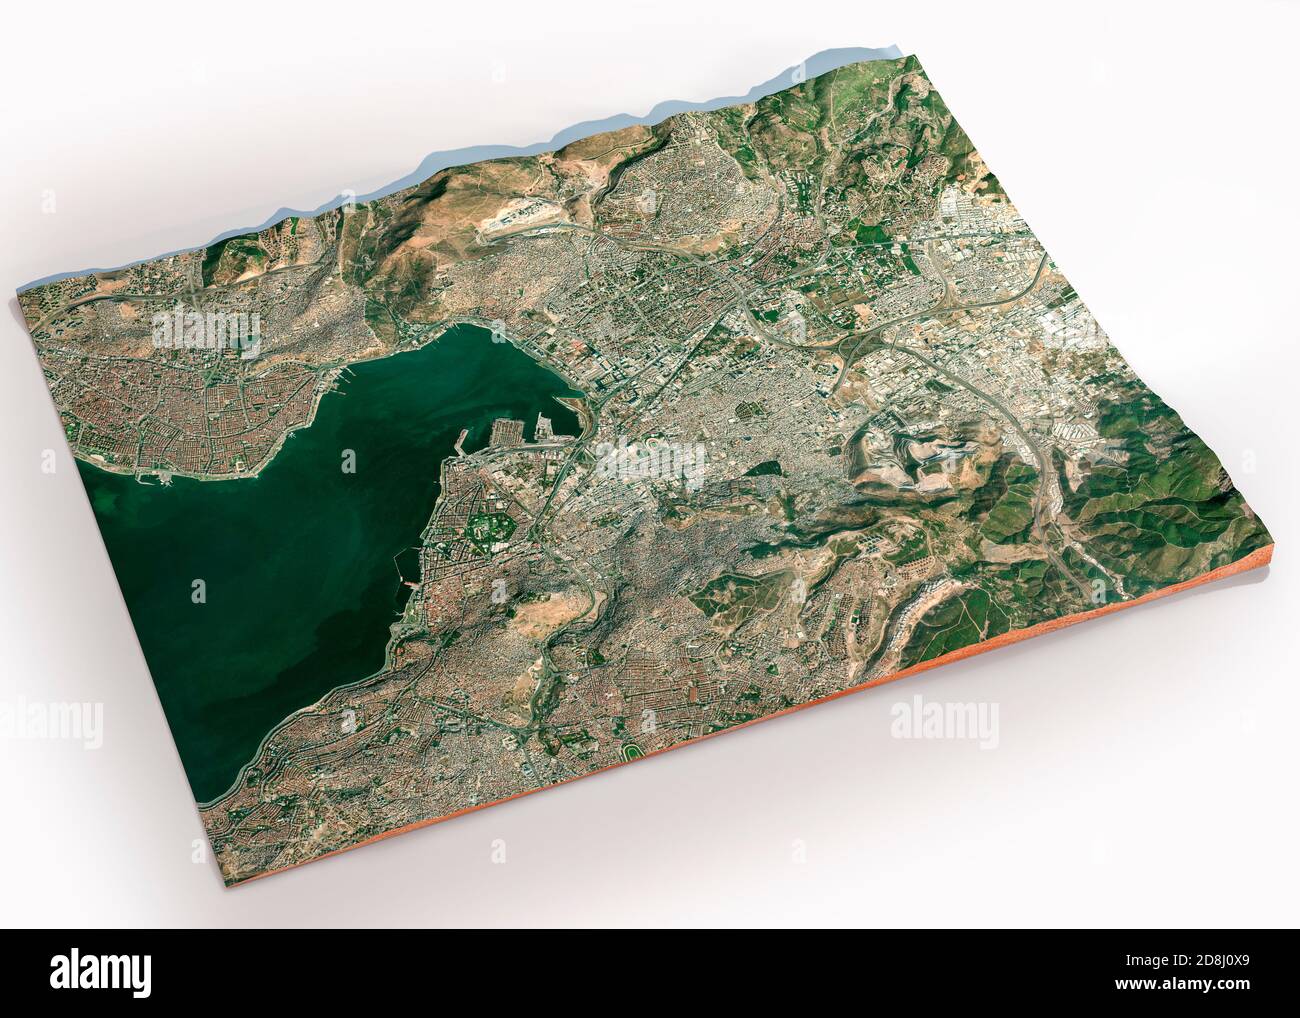 Mappa satellitare di Izmir. È una città metropolitana nell'estremità occidentale dell'Anatolia e la terza città più popolosa della Turchia. Mappa, terremoto Foto Stock